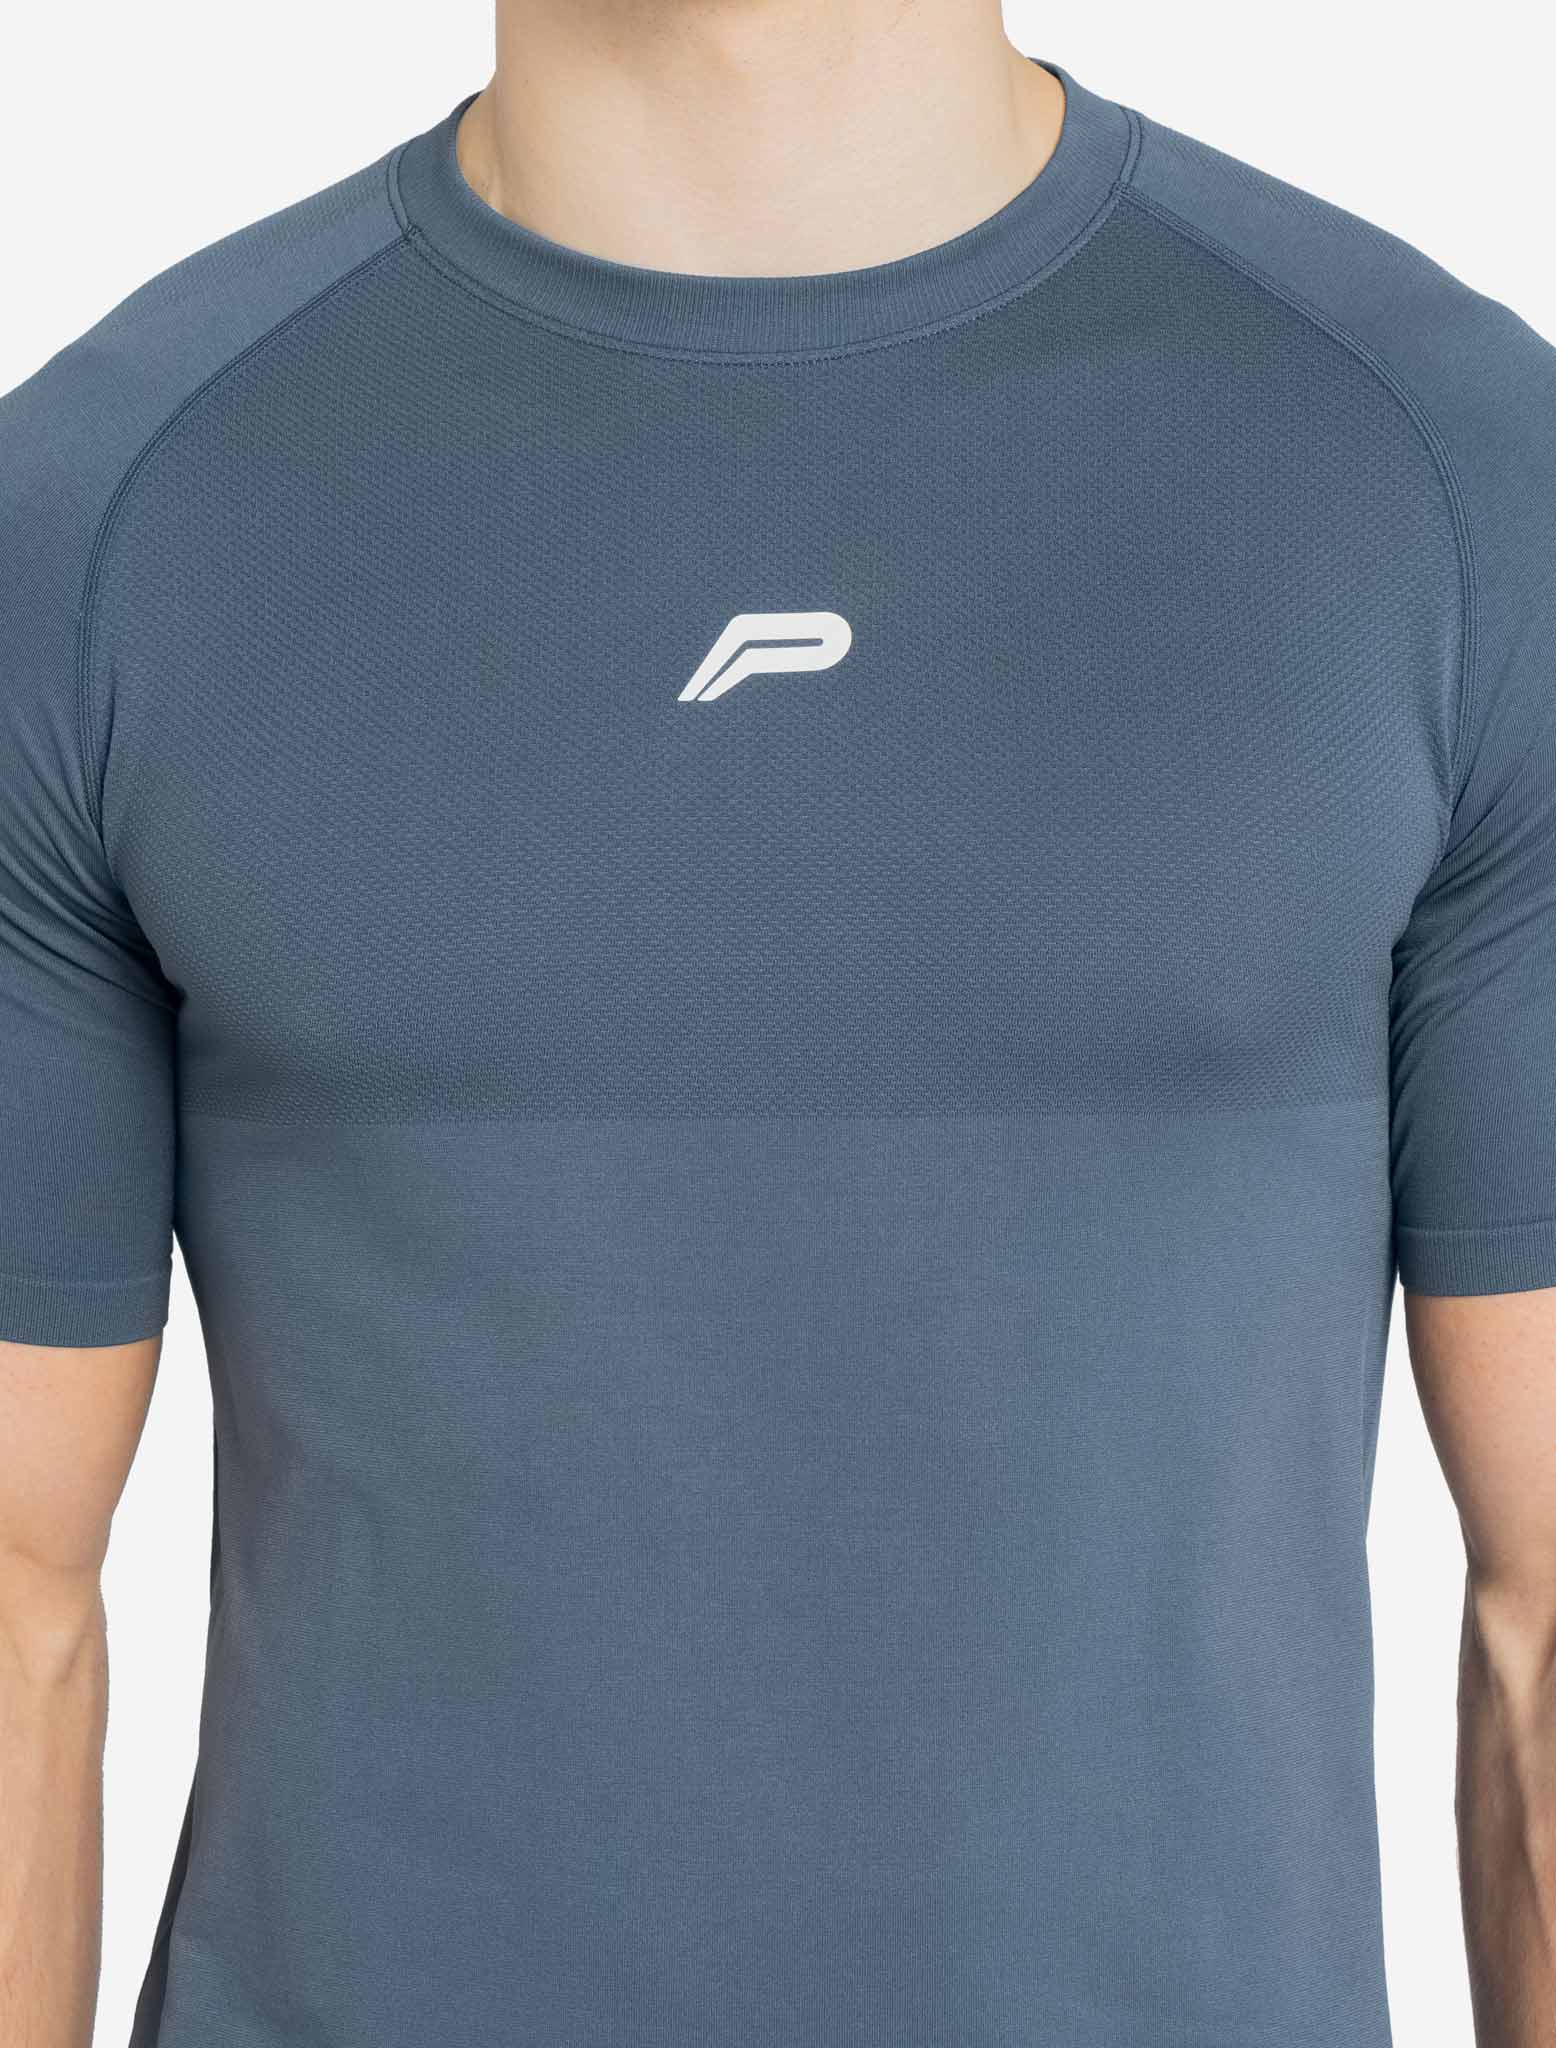 Seamless T-shirt / Deep Blue Pursue Fitness 2